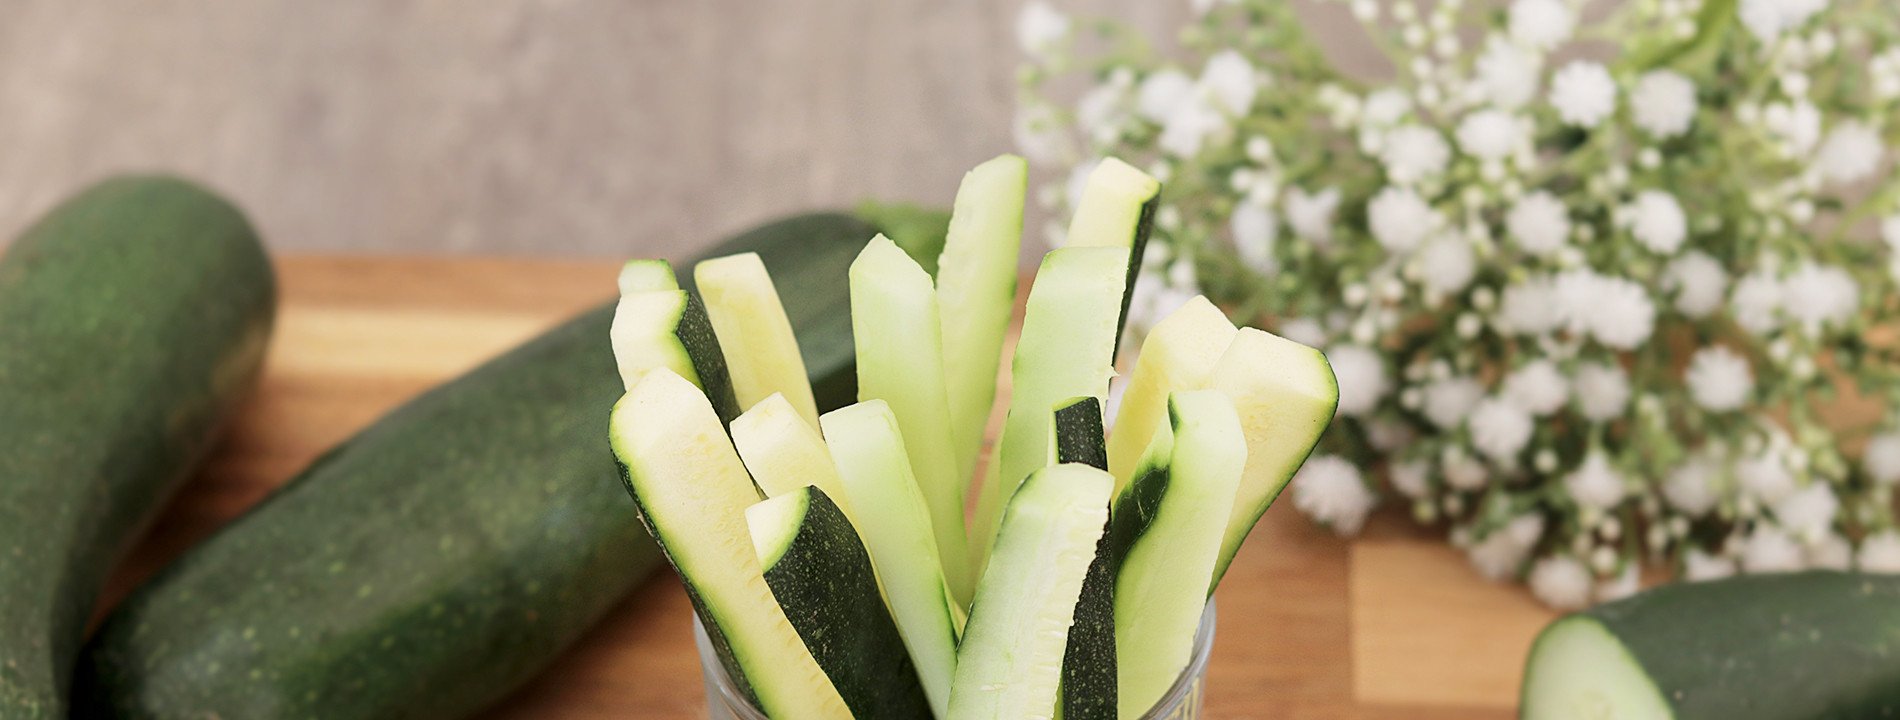 Mix Cucumber and Zucchini Sticks